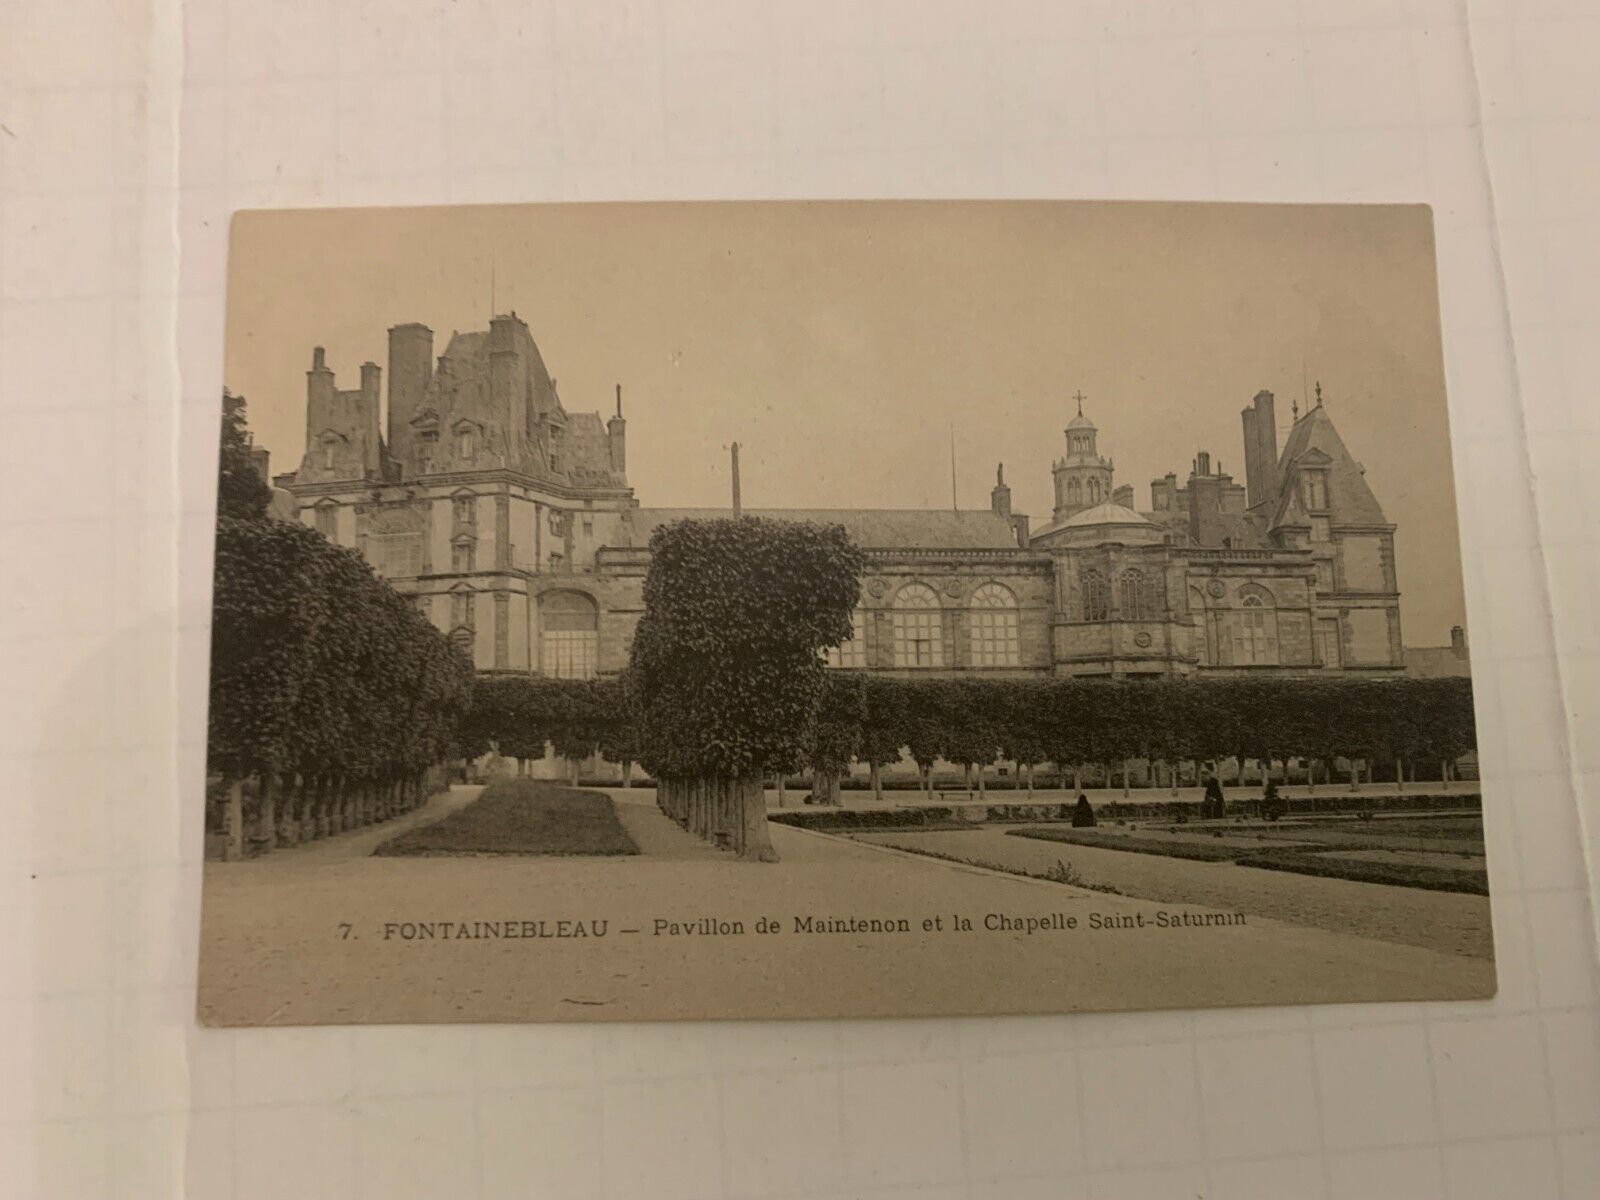 c.1910 Fontainebleau Pavillon Maintenon Chapelle Saint Saturnin France Postcard